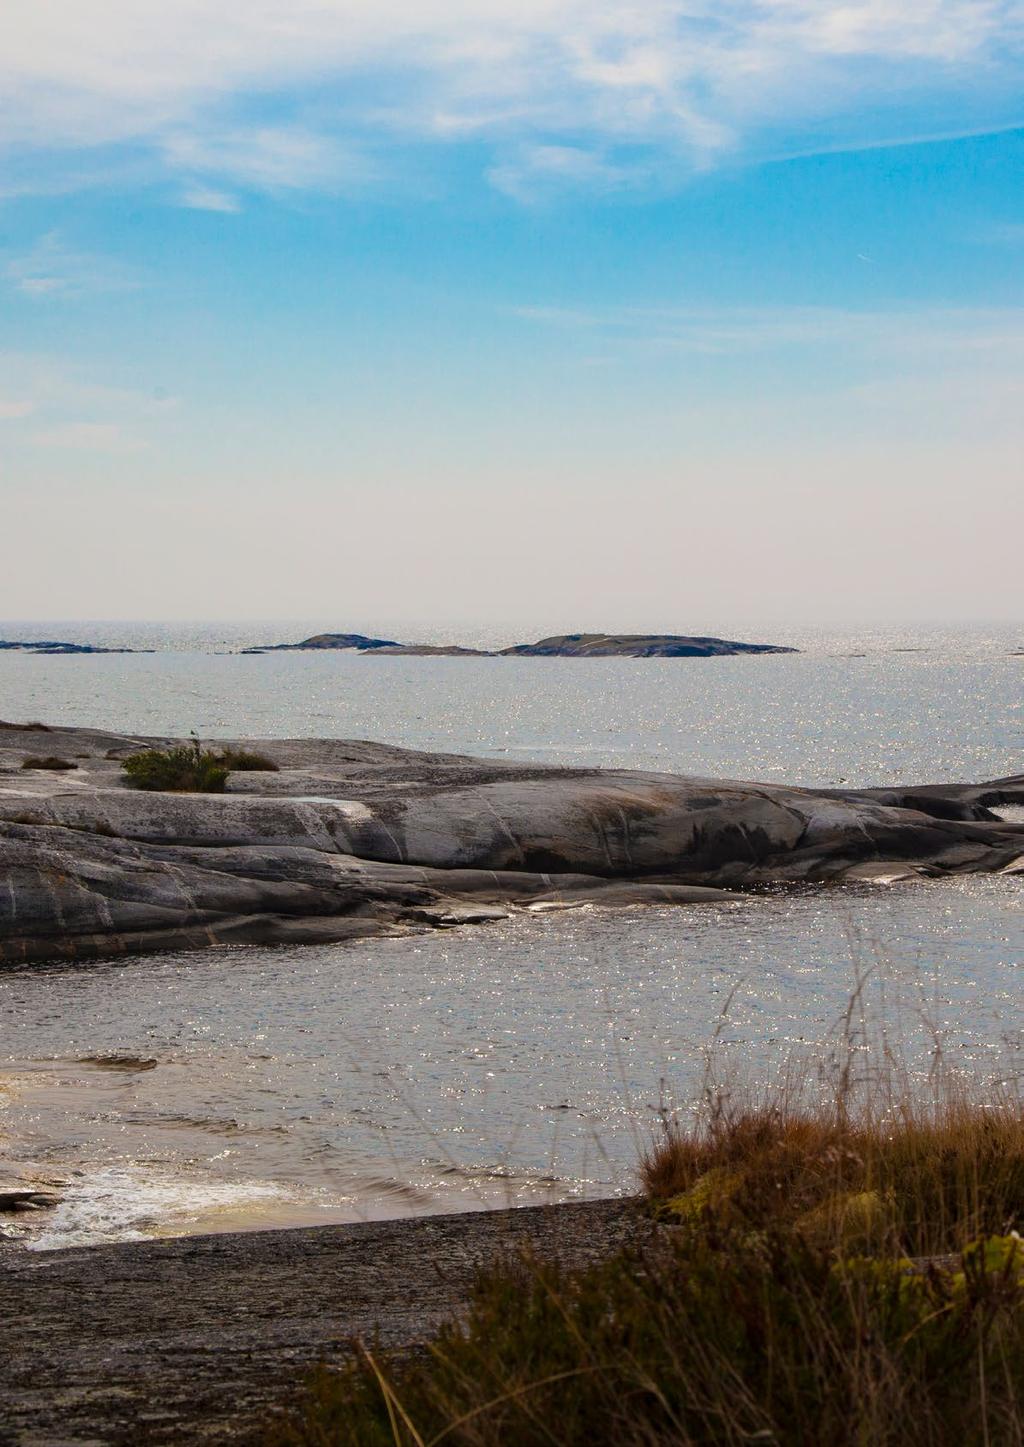 Nationella och regionala miljömål Sveriges riksdag har tagit beslut om svenska miljömål (miljökvalitetsmål). De är 16 stycken och utgör en gemensam riktning för det svenska miljöarbetet.